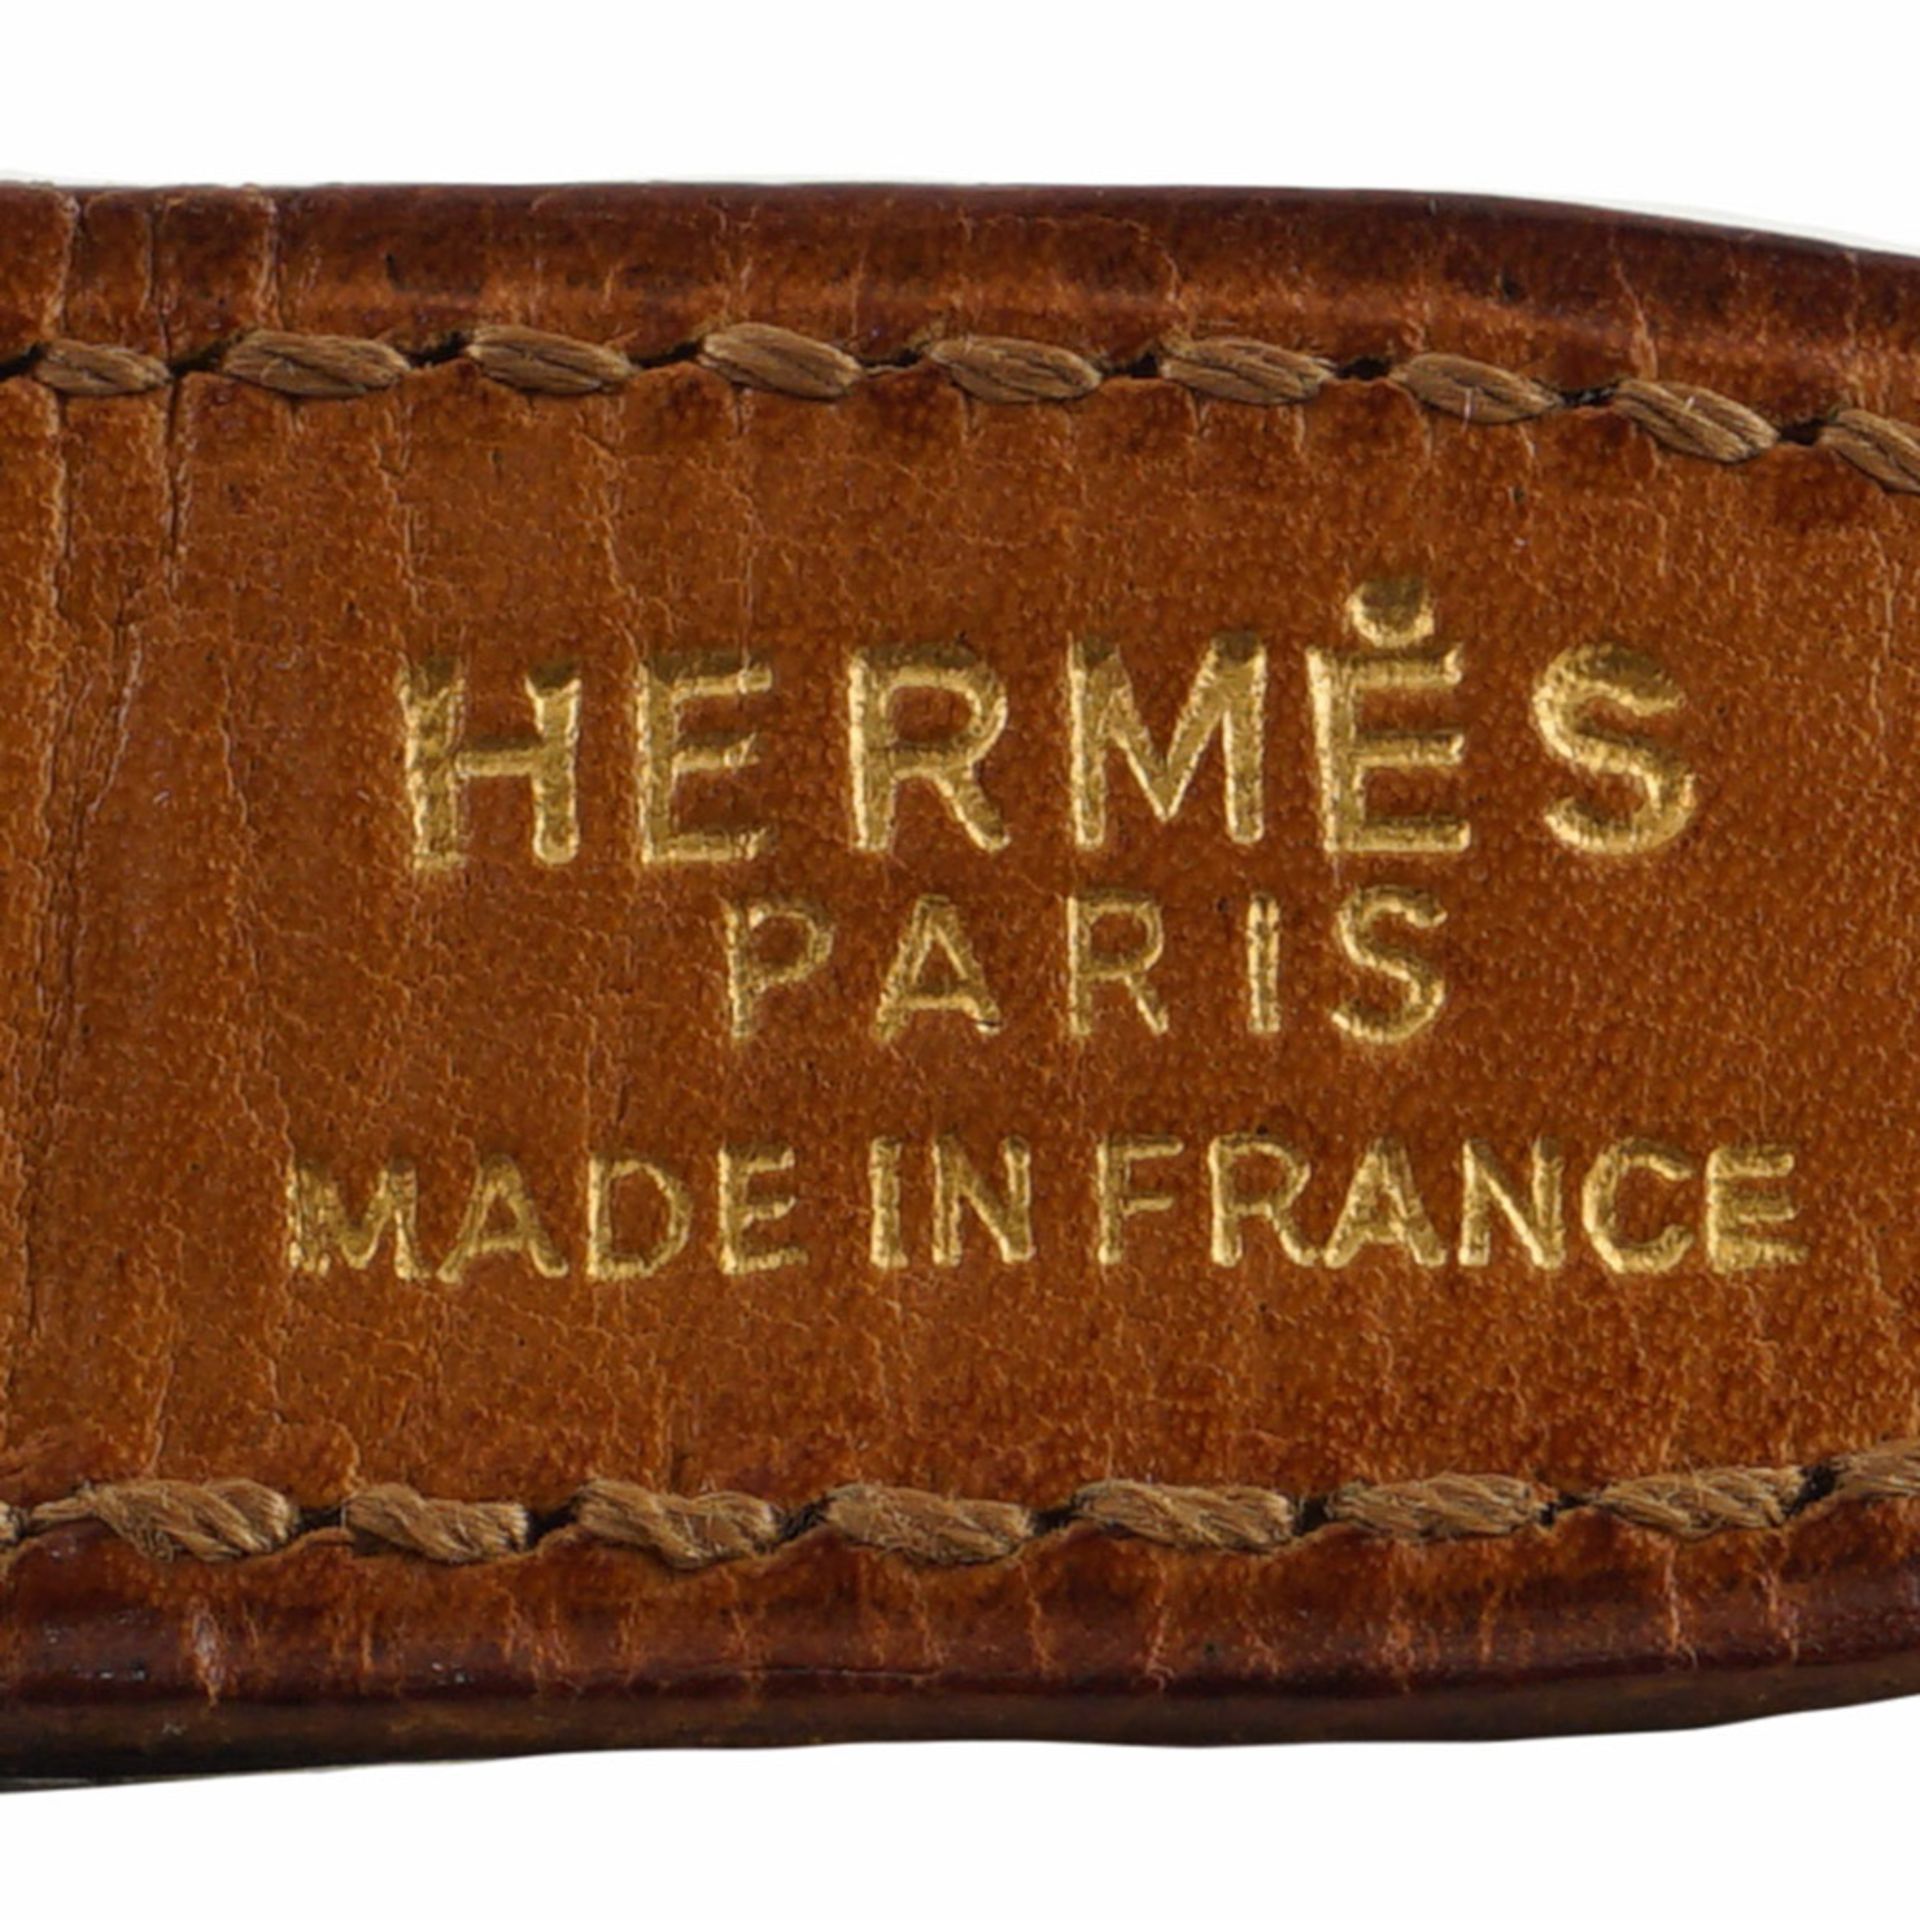 Hermès, vintage belt 1970/80s max length 77 cm. - Bild 2 aus 2